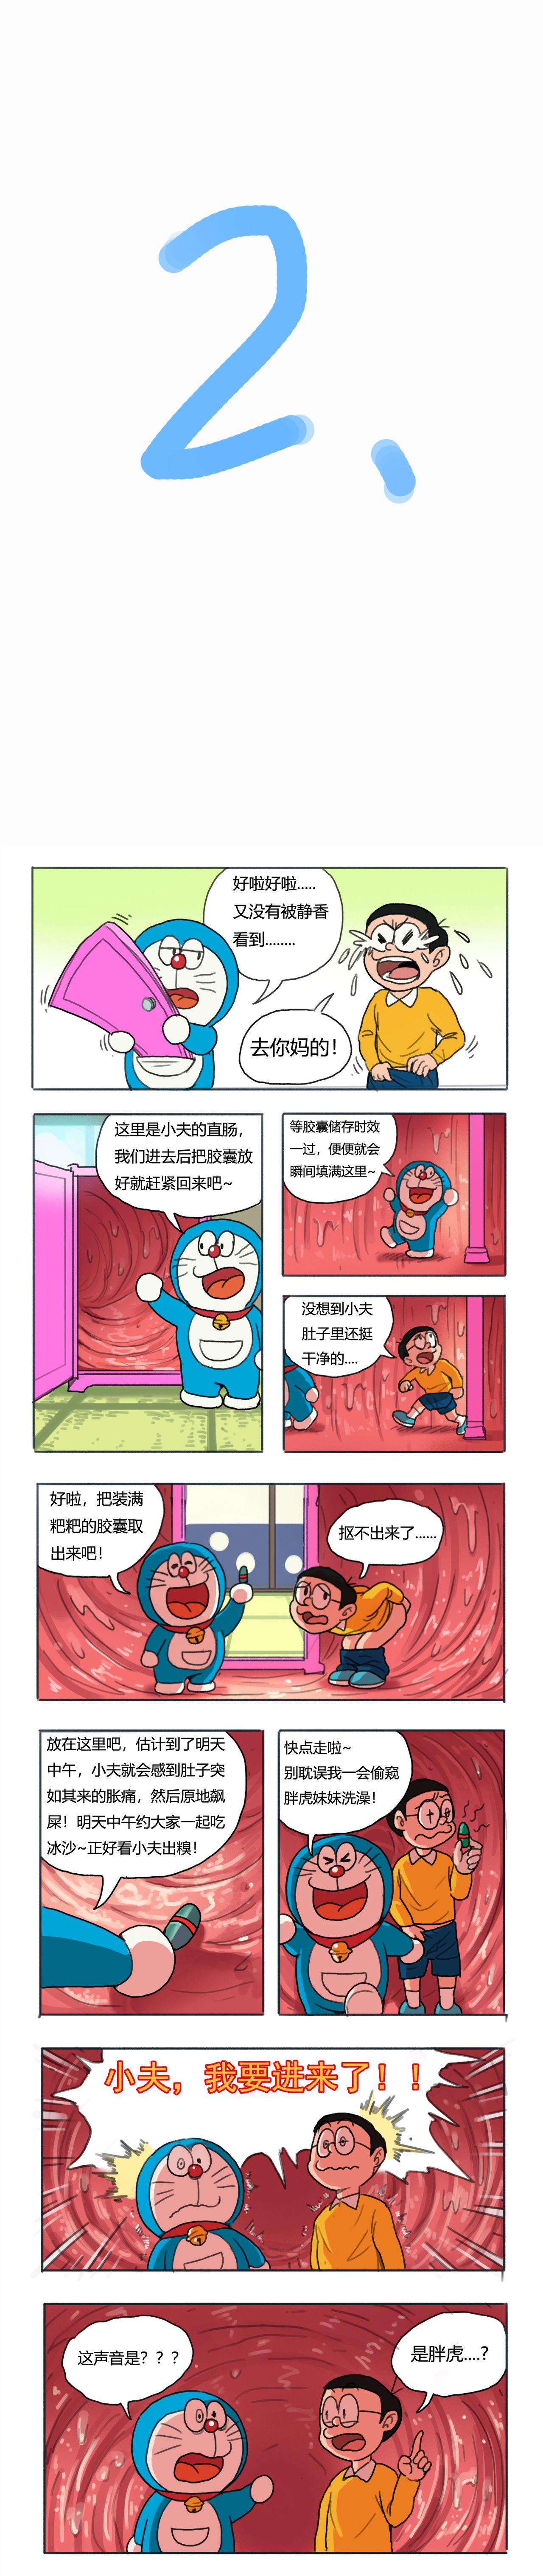 No Condom 哆啦AV梦 - Doraemon Exibicionismo - Page 2